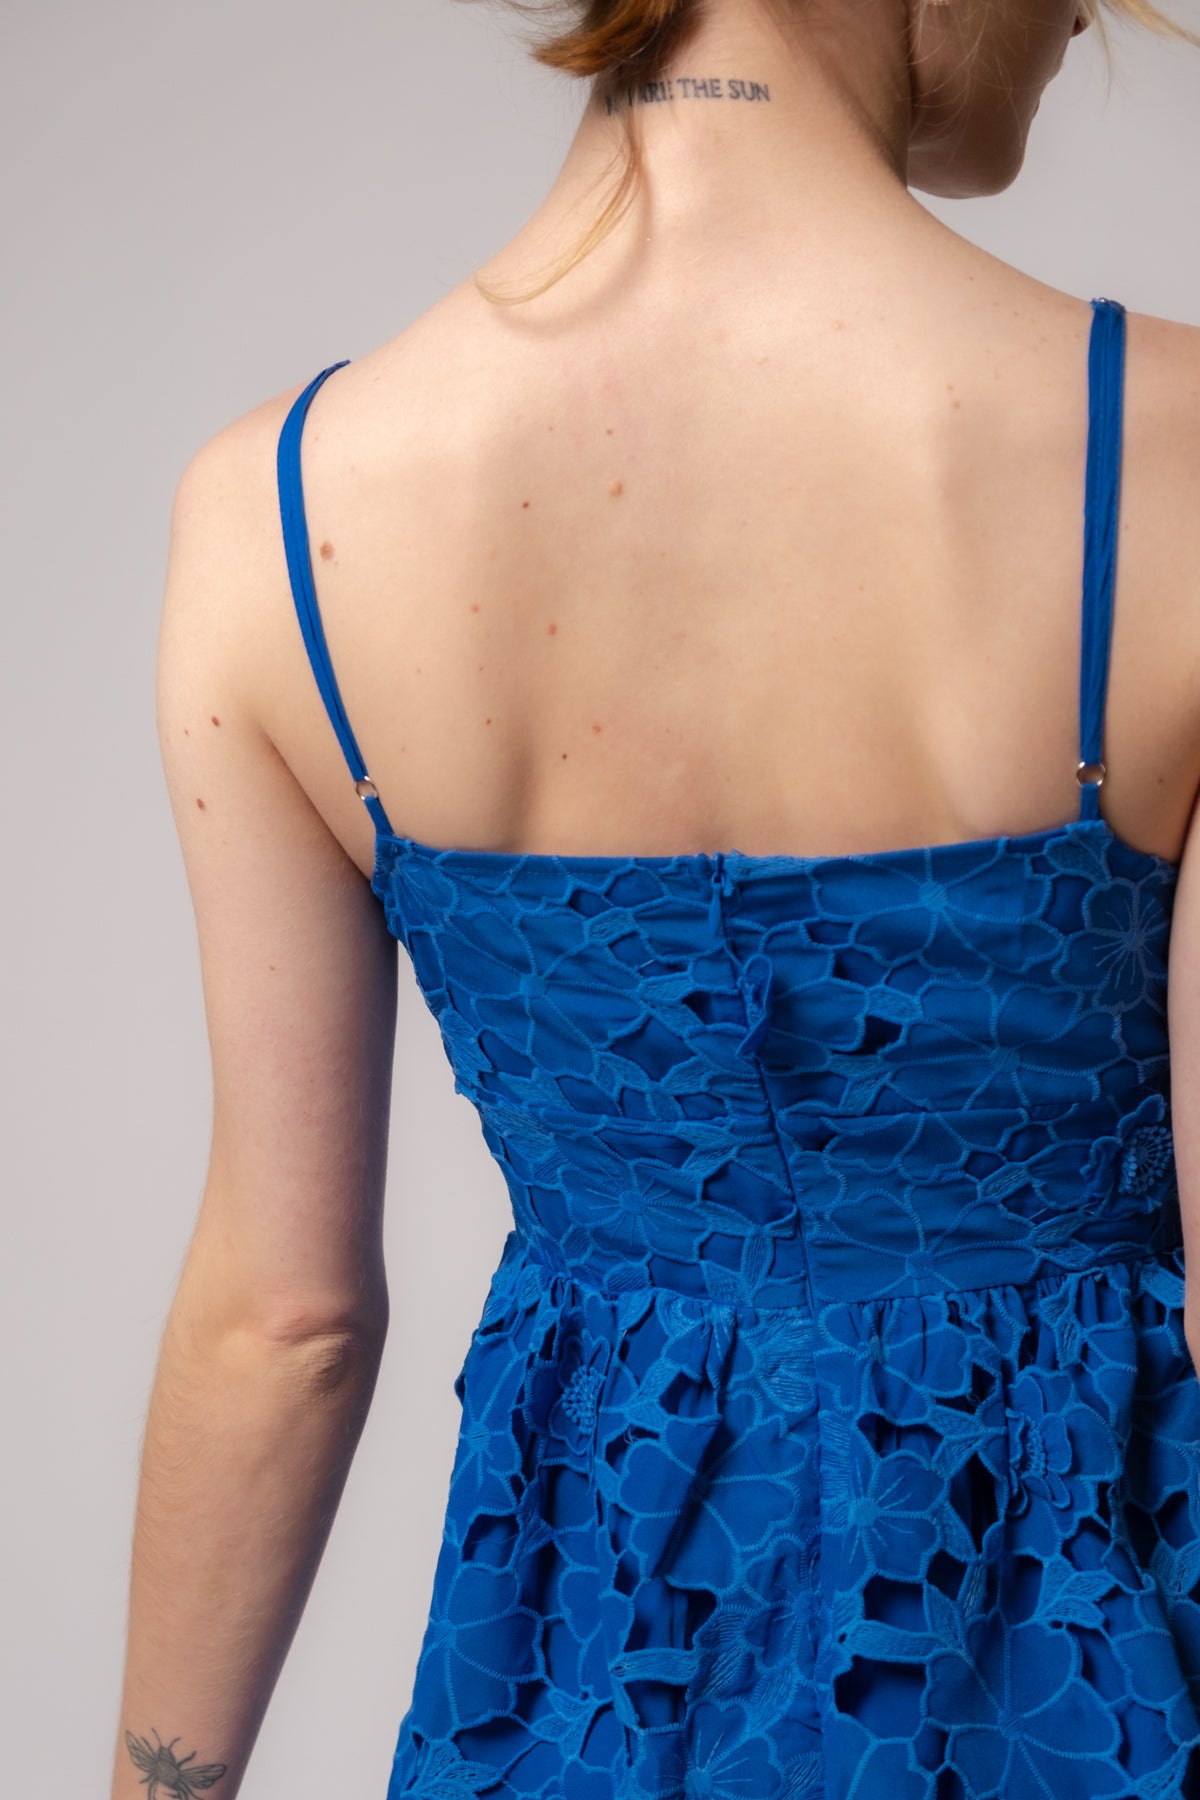 True Blue Lace Mini Dress